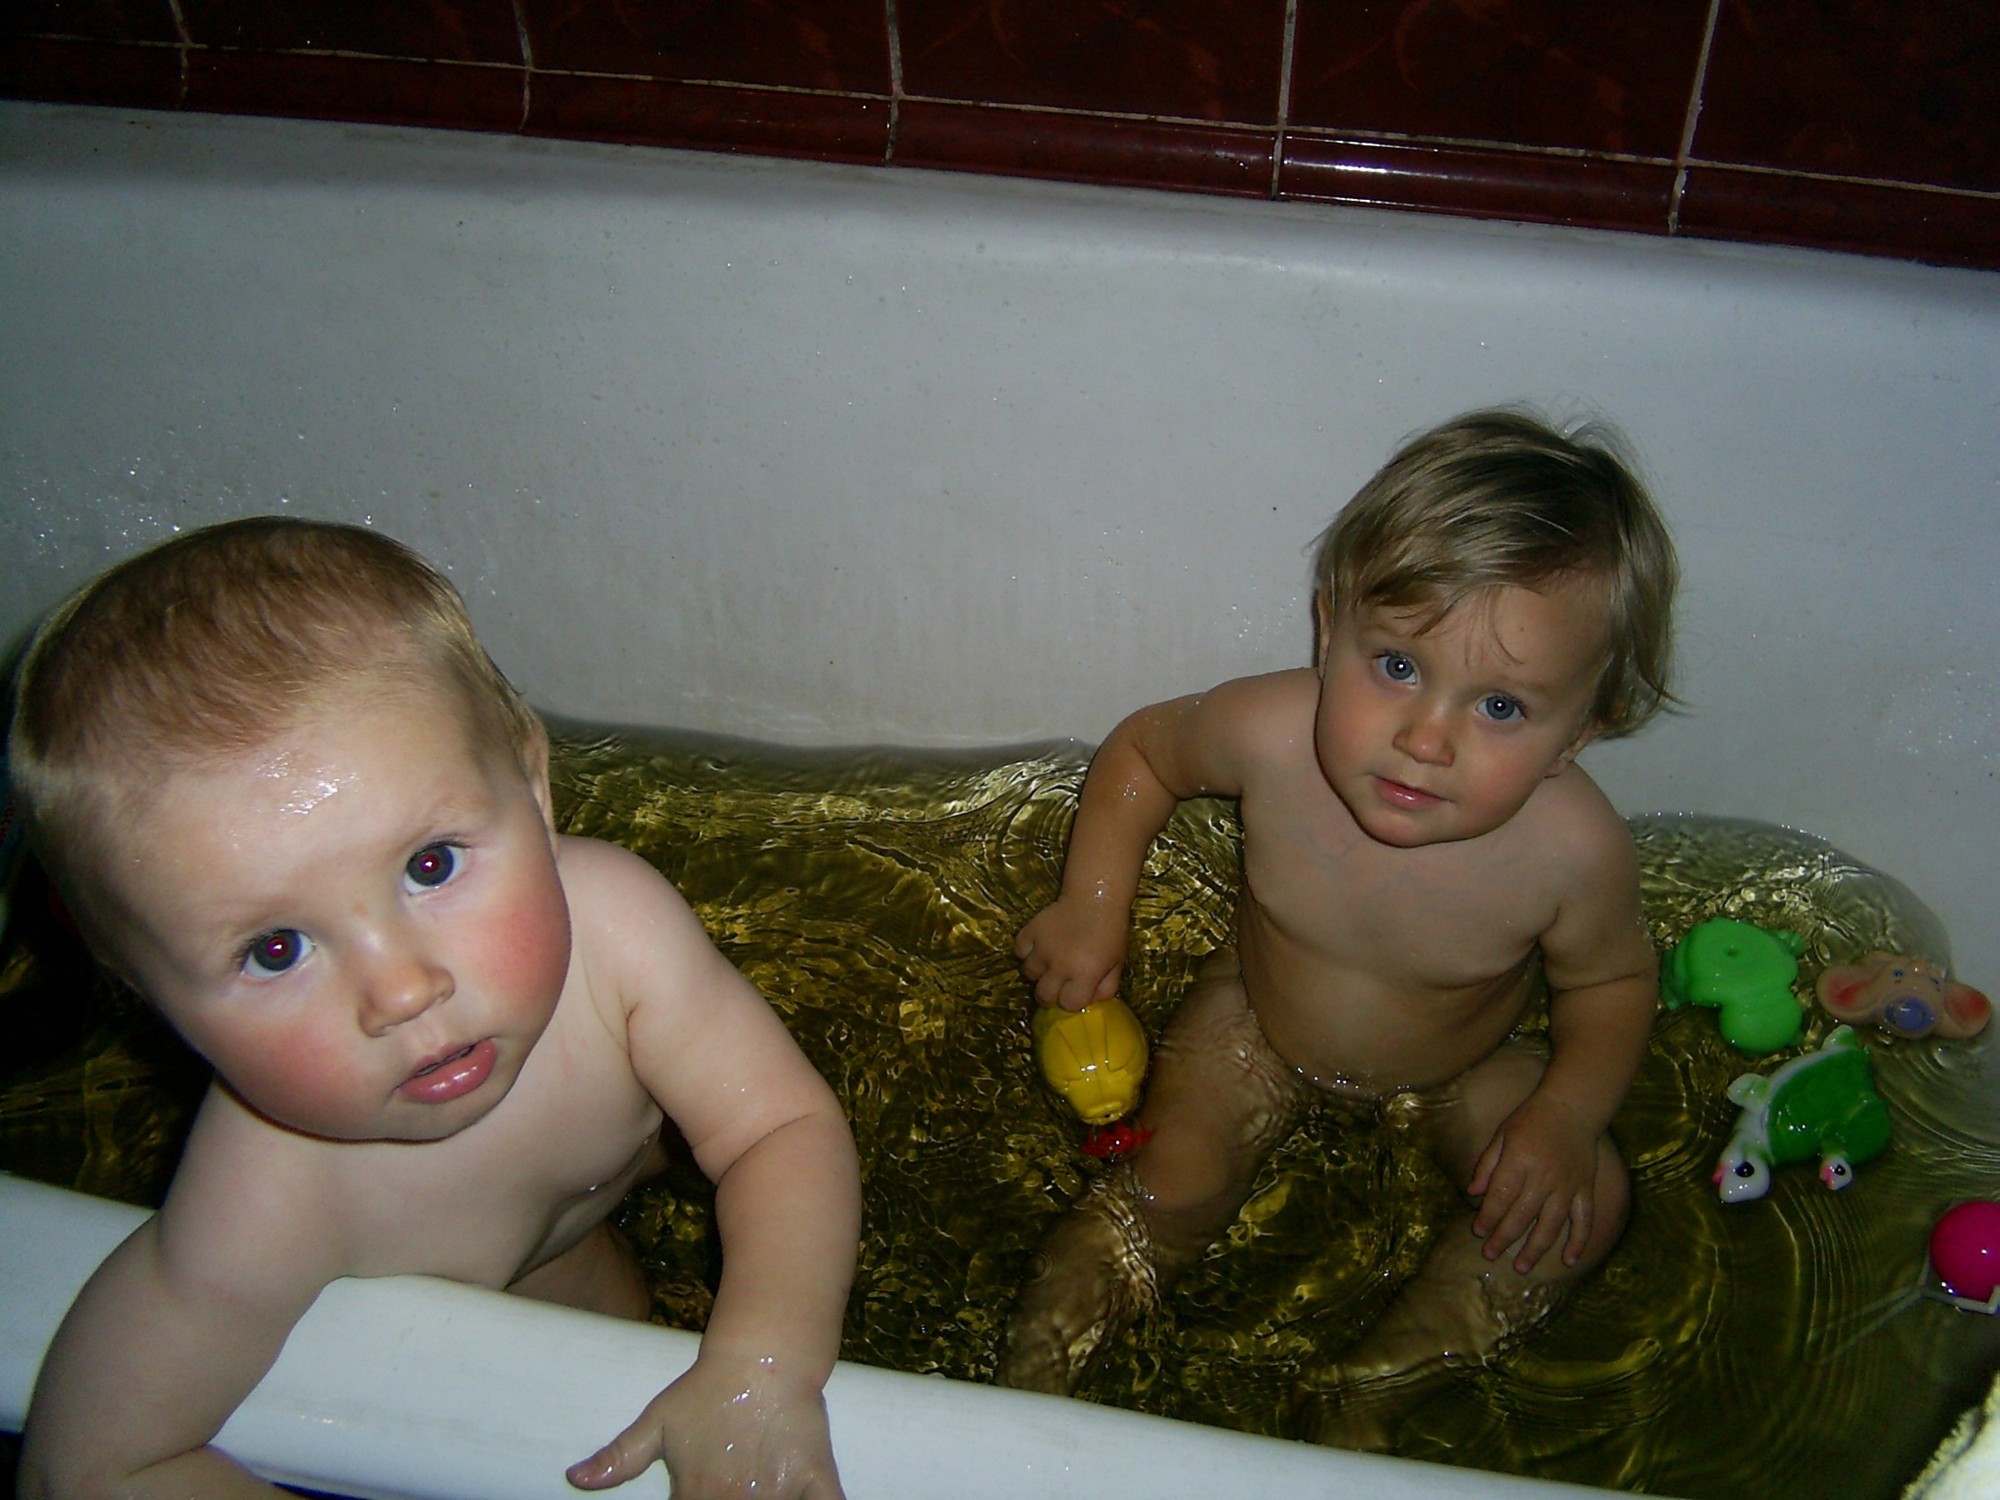 Вместе ванну принимали и в игрушки мы играли. Мы - веселые друзья